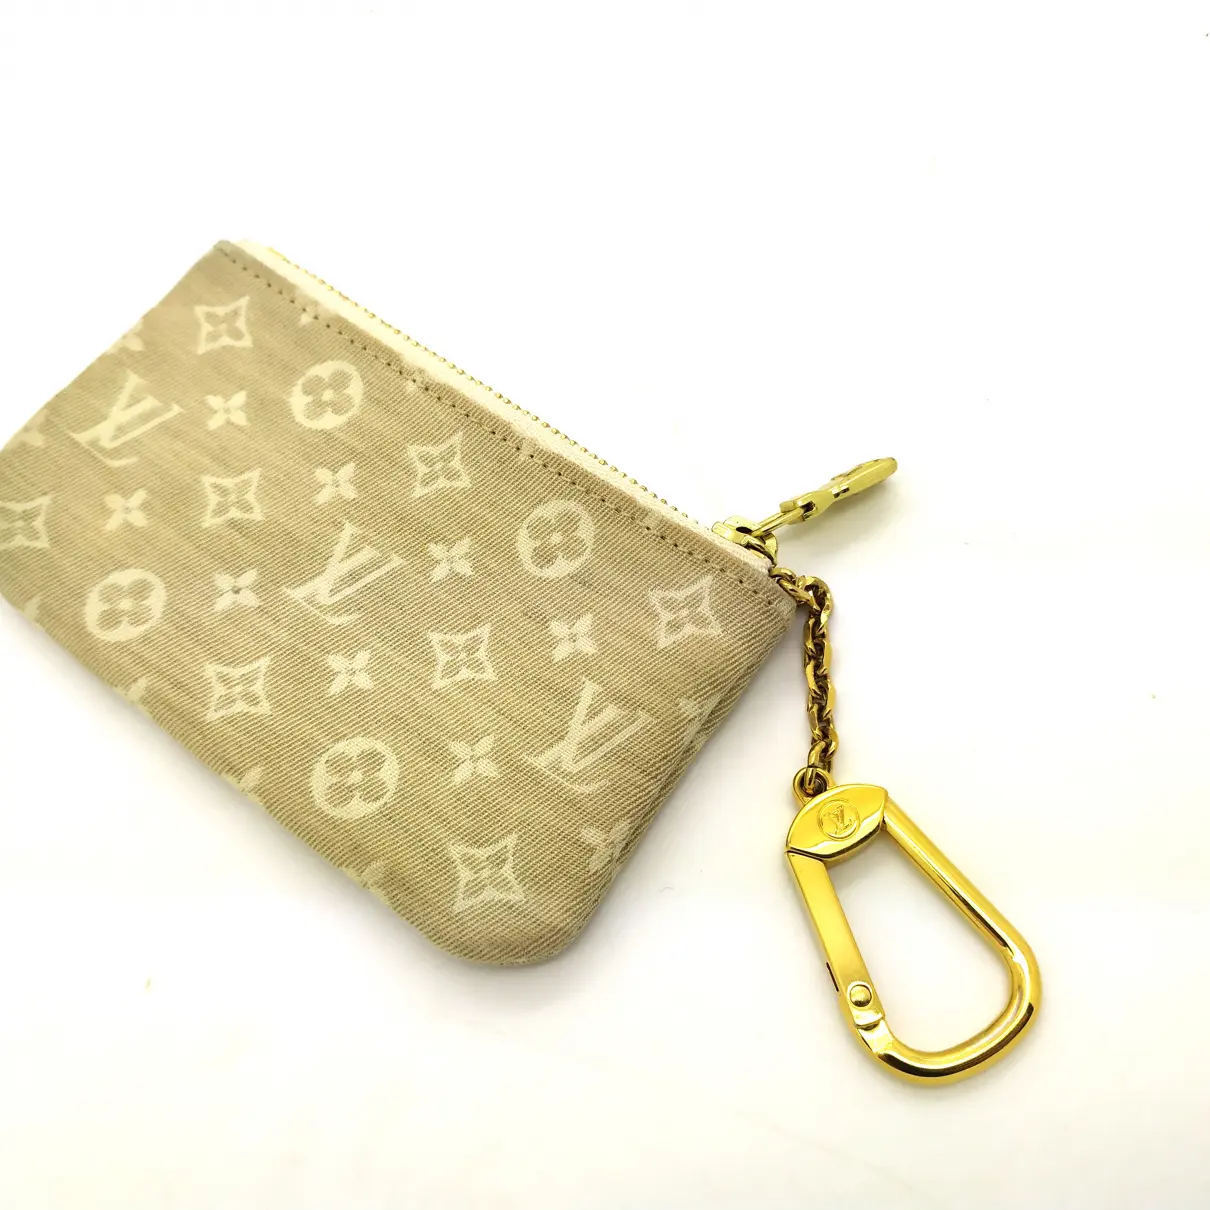 Buy Louis Vuitton Cloth purse online